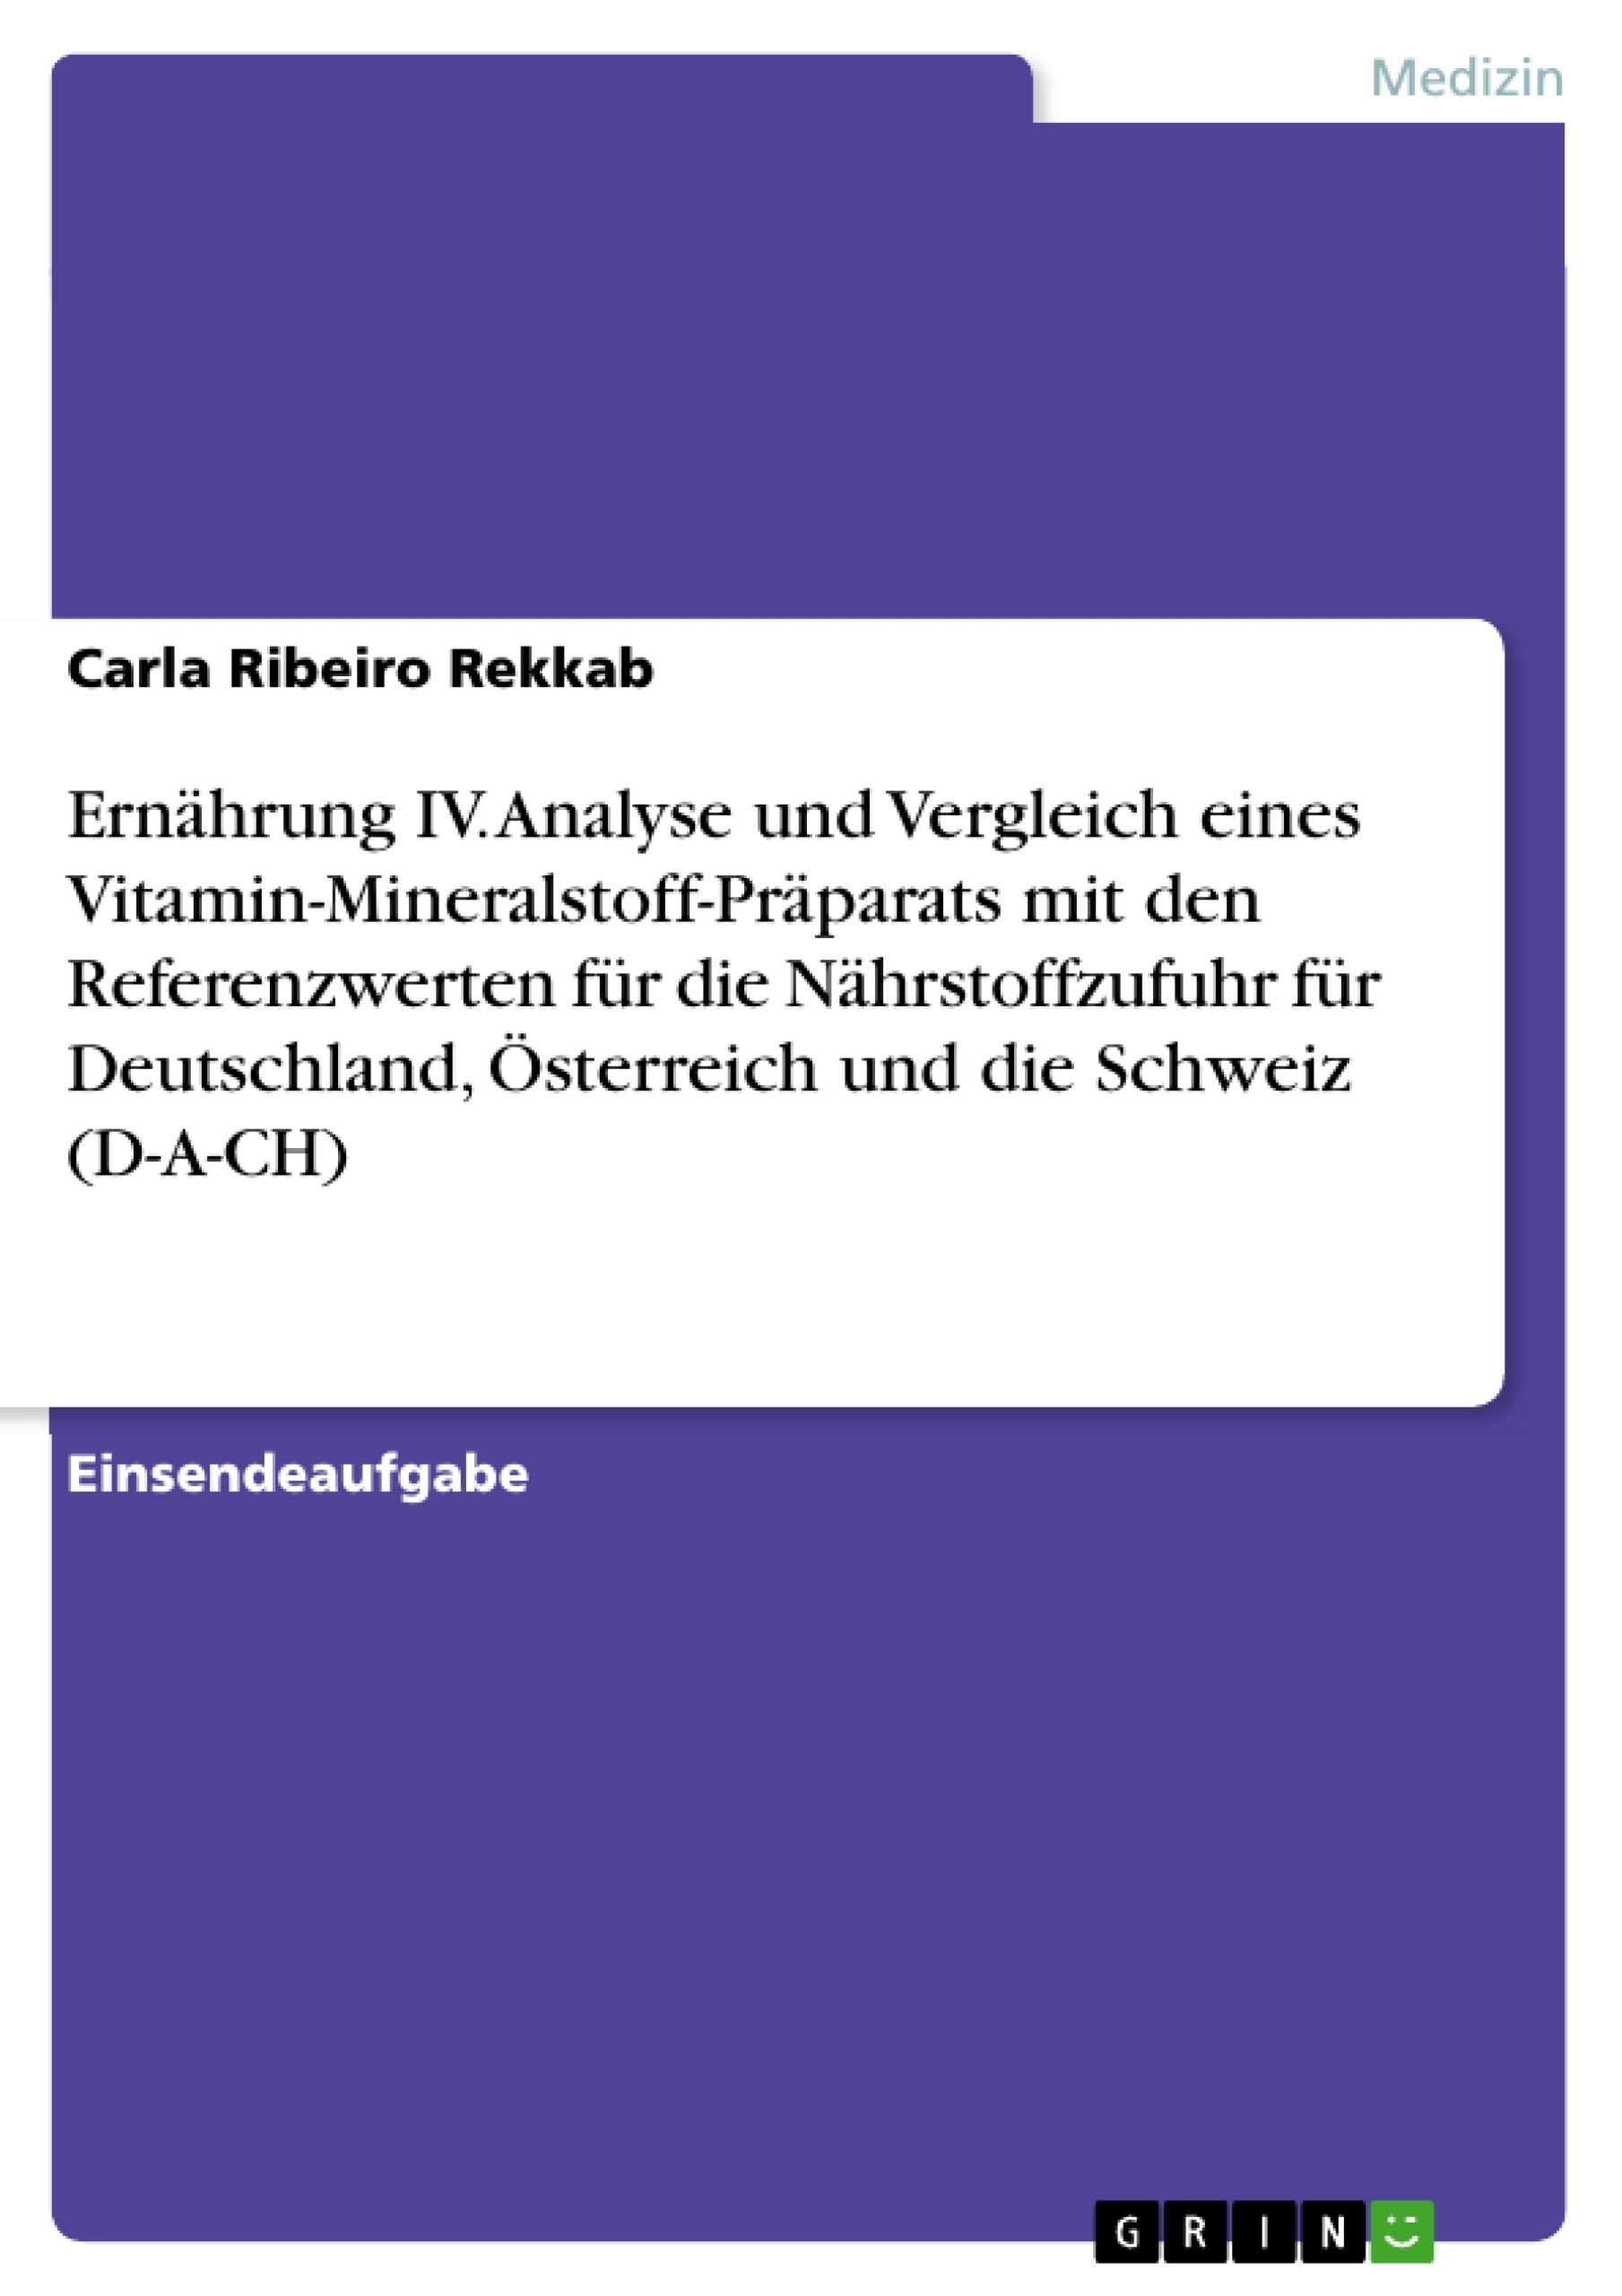 Título: Ernährung IV. Analyse und Vergleich eines Vitamin-Mineralstoff-Präparats mit den Referenzwerten für die Nährstoffzufuhr für Deutschland, Österreich und die Schweiz (D-A-CH)